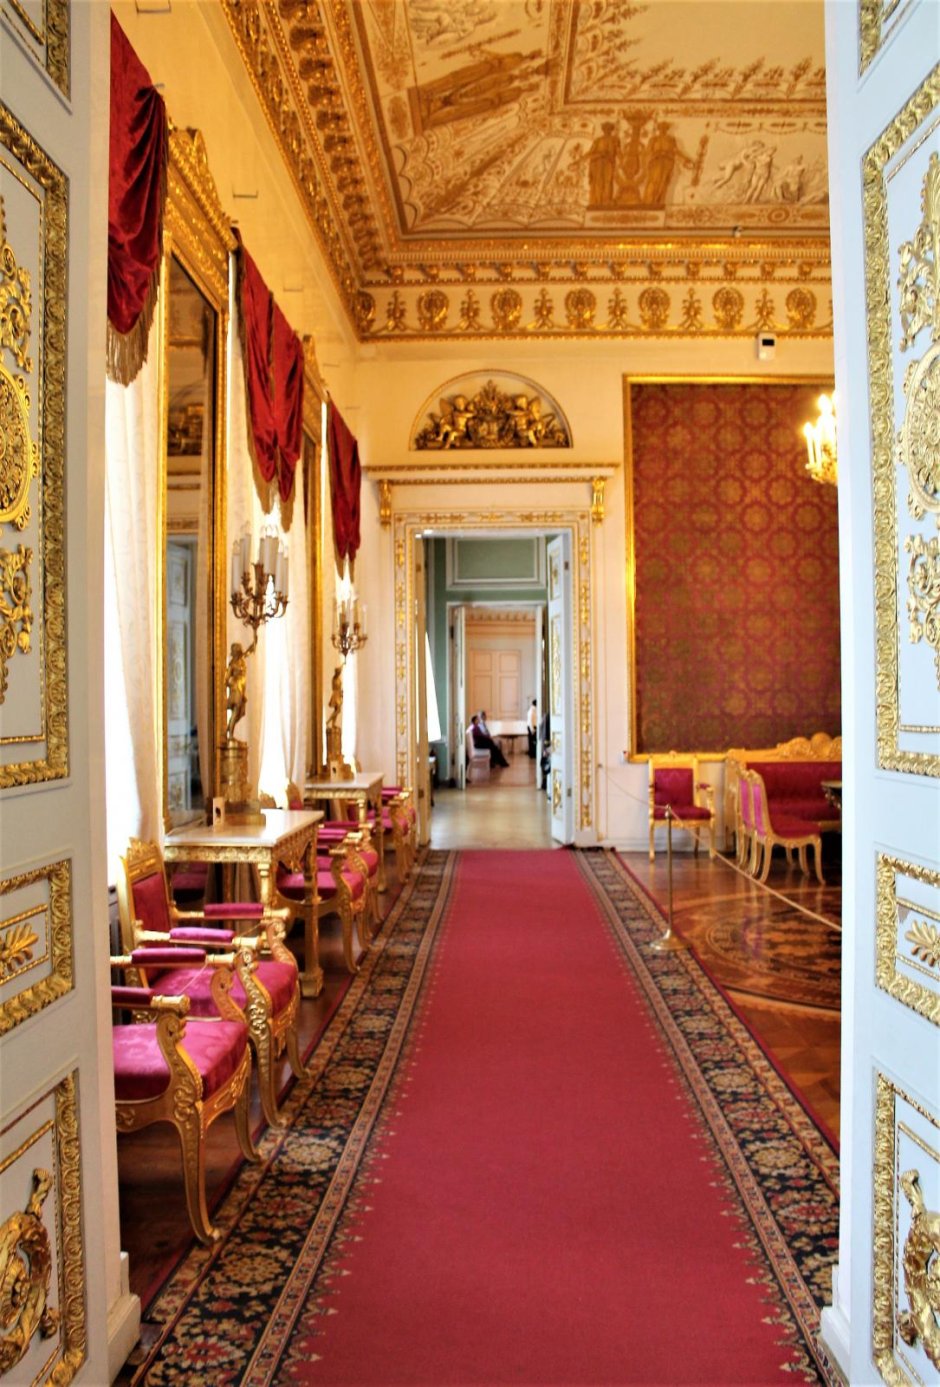 Красная гостиная Юсуповского дворца